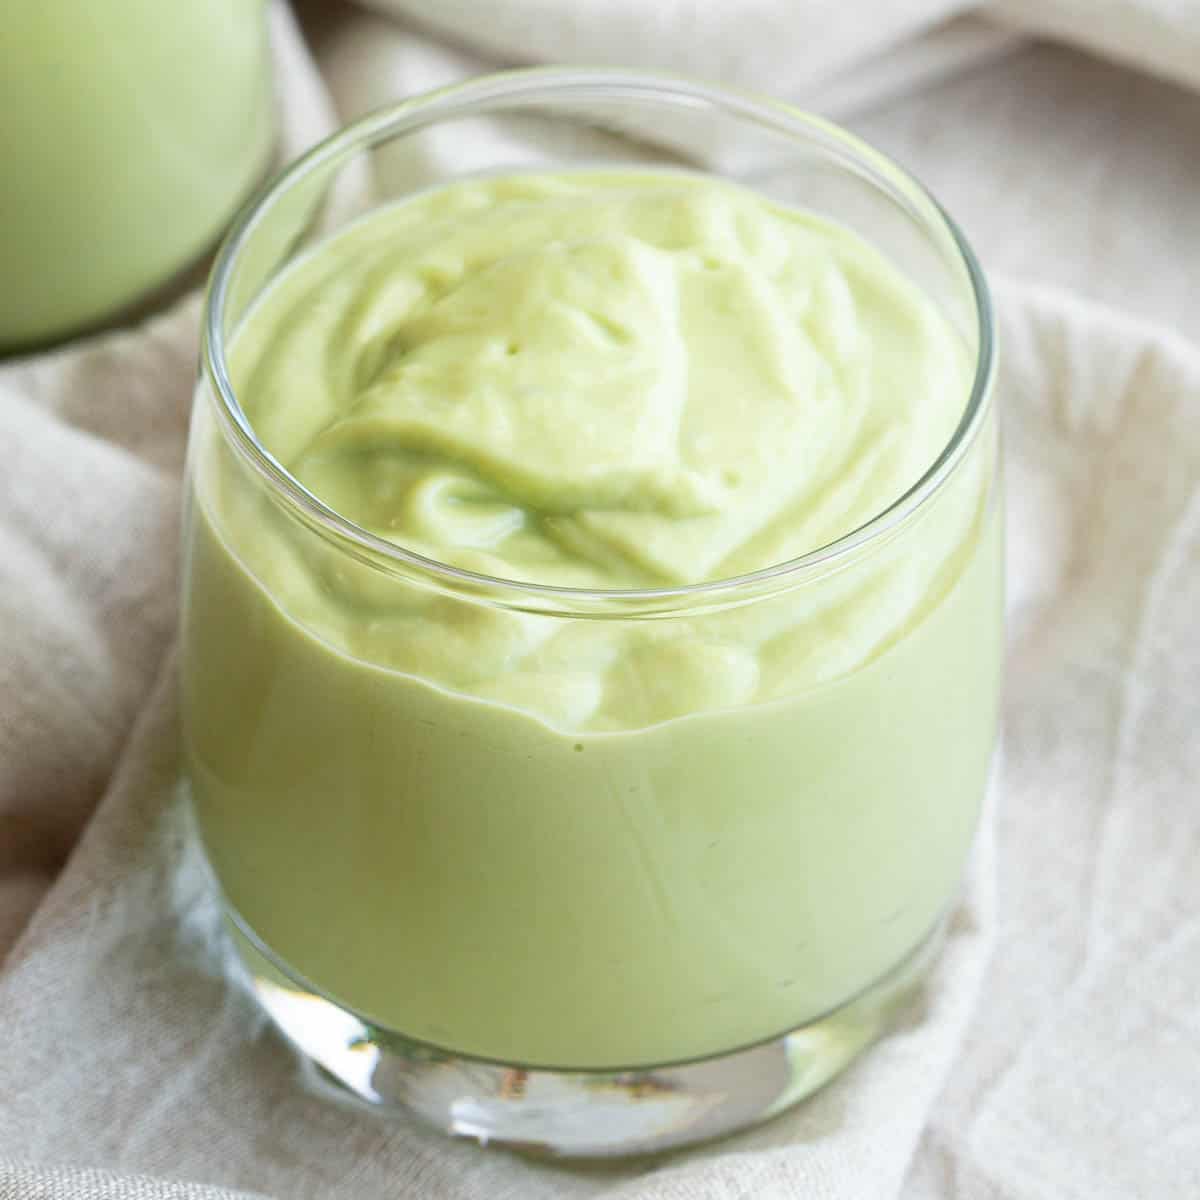 Close up shot of a glass of Vietnamese avocado smoothie.